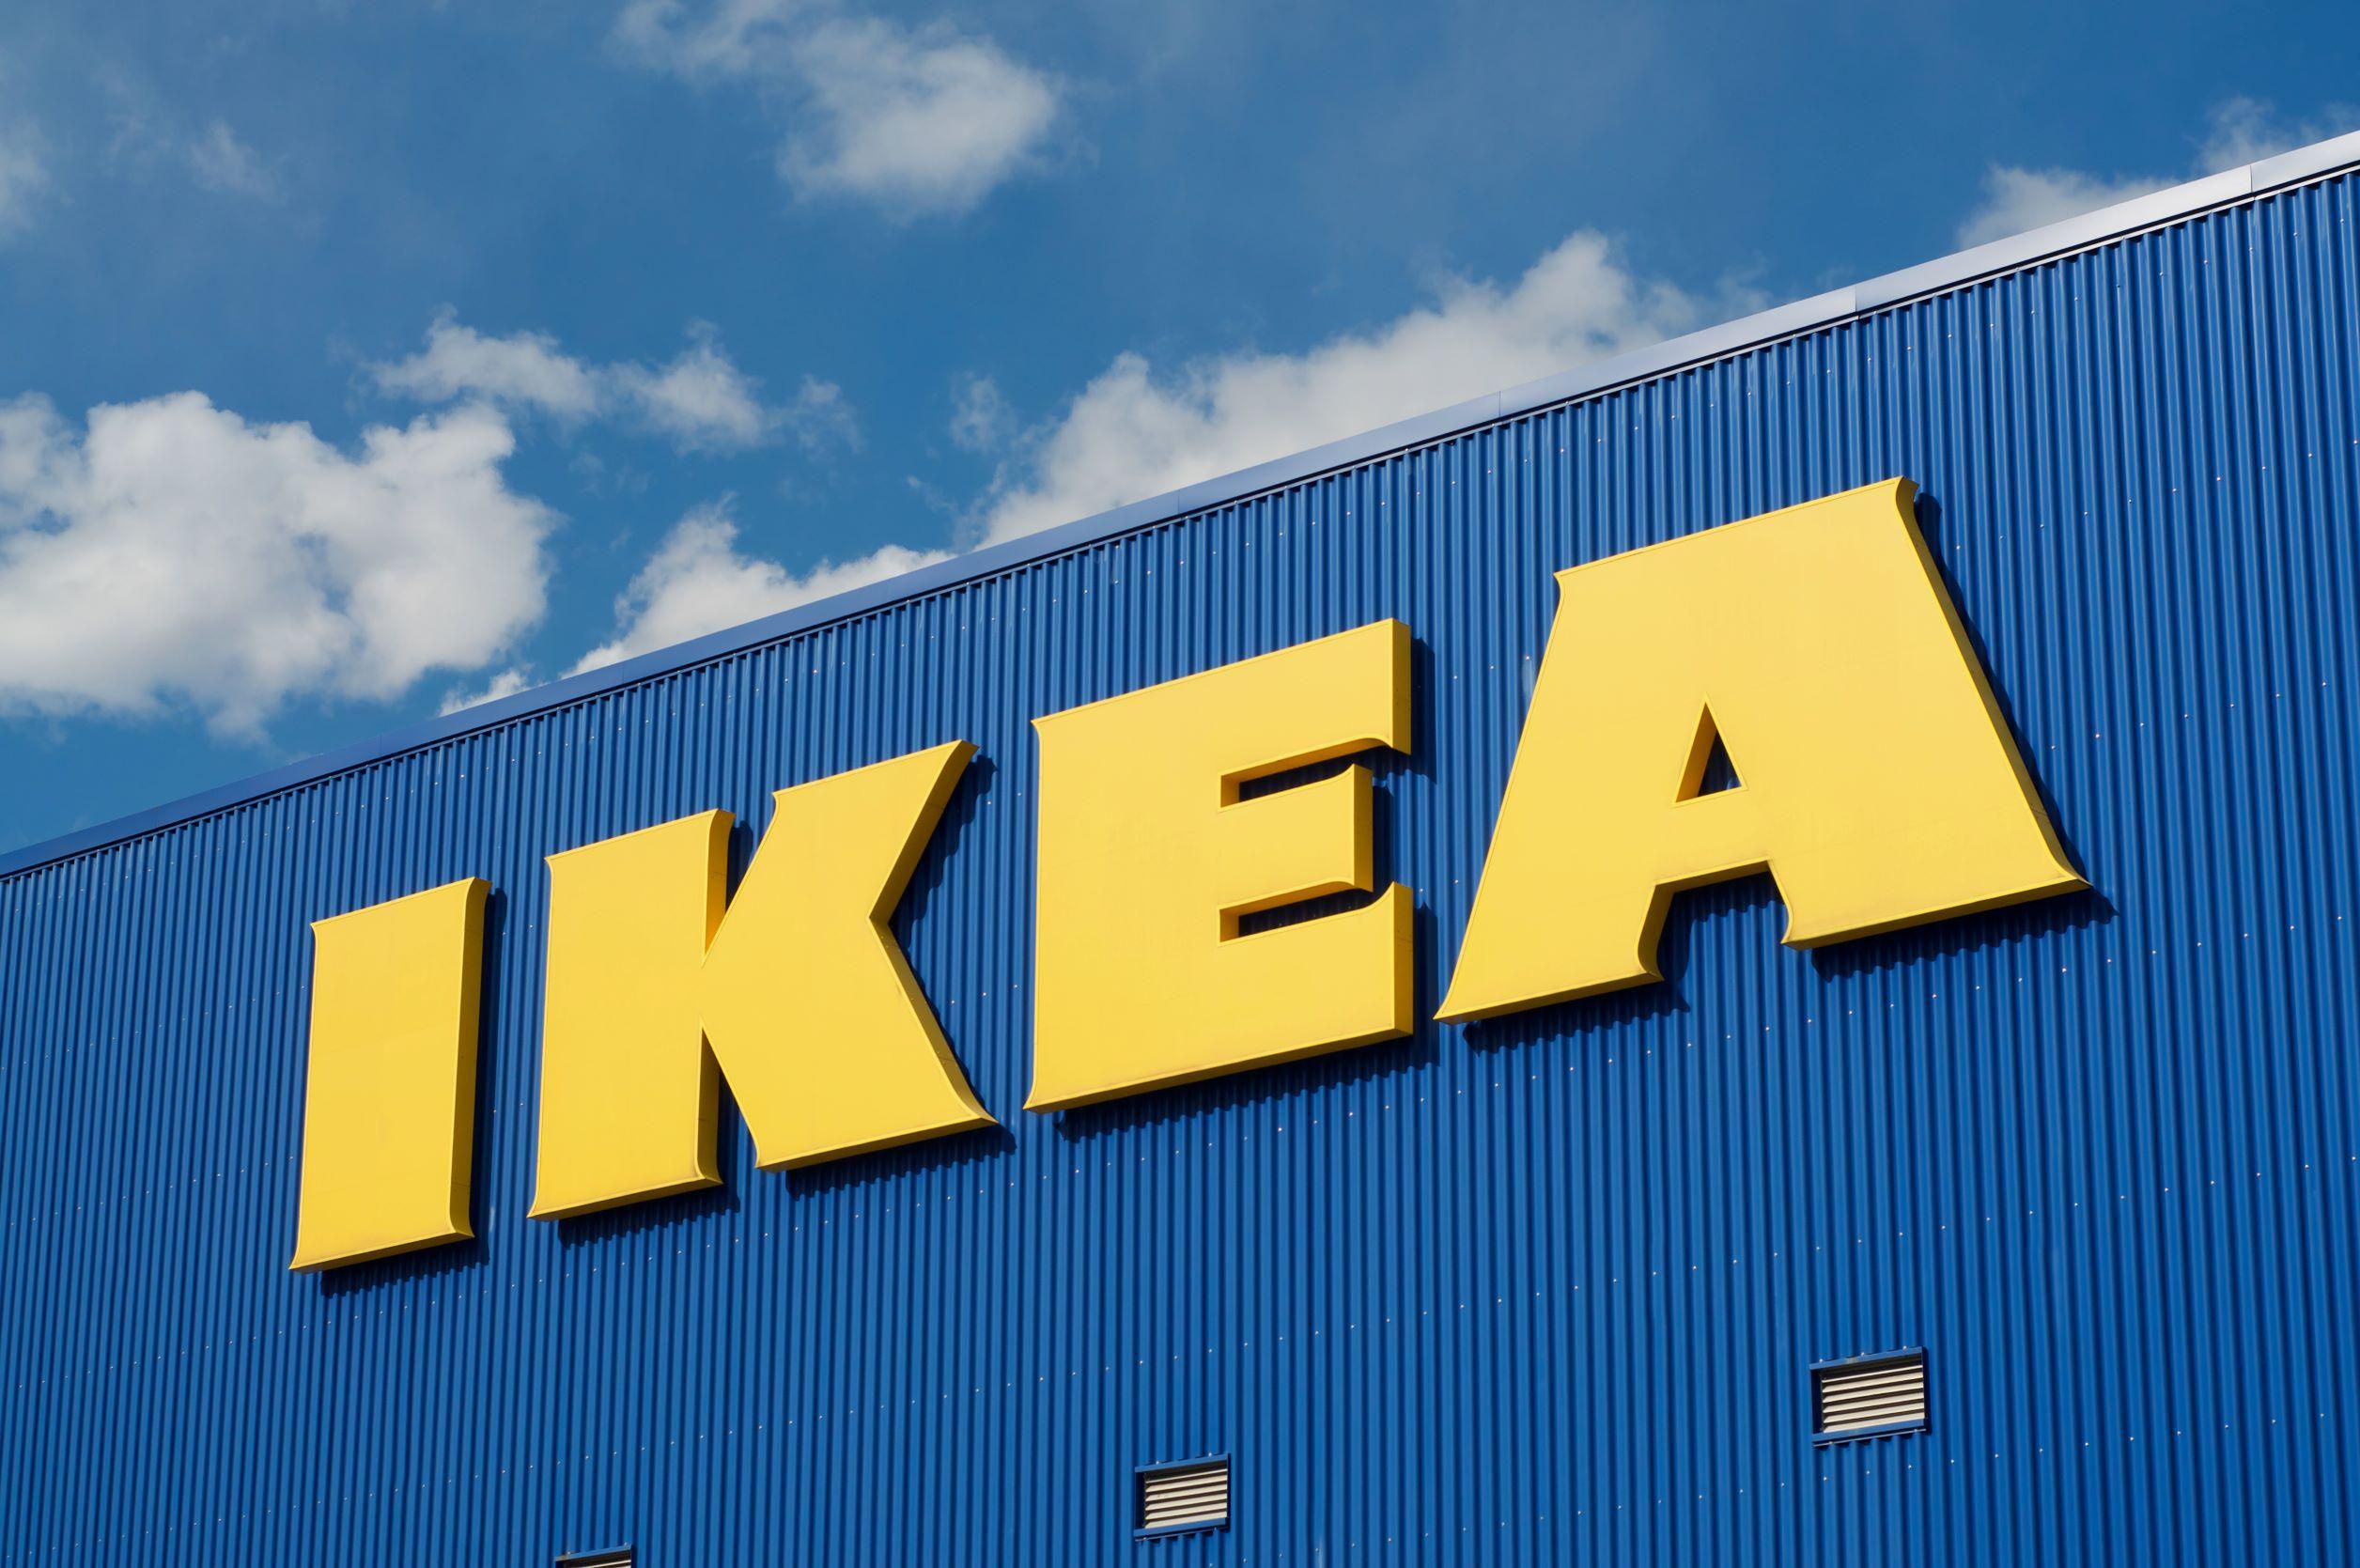 Több változás is volt, még több lesz az IKEA magyarországi tevékenységében